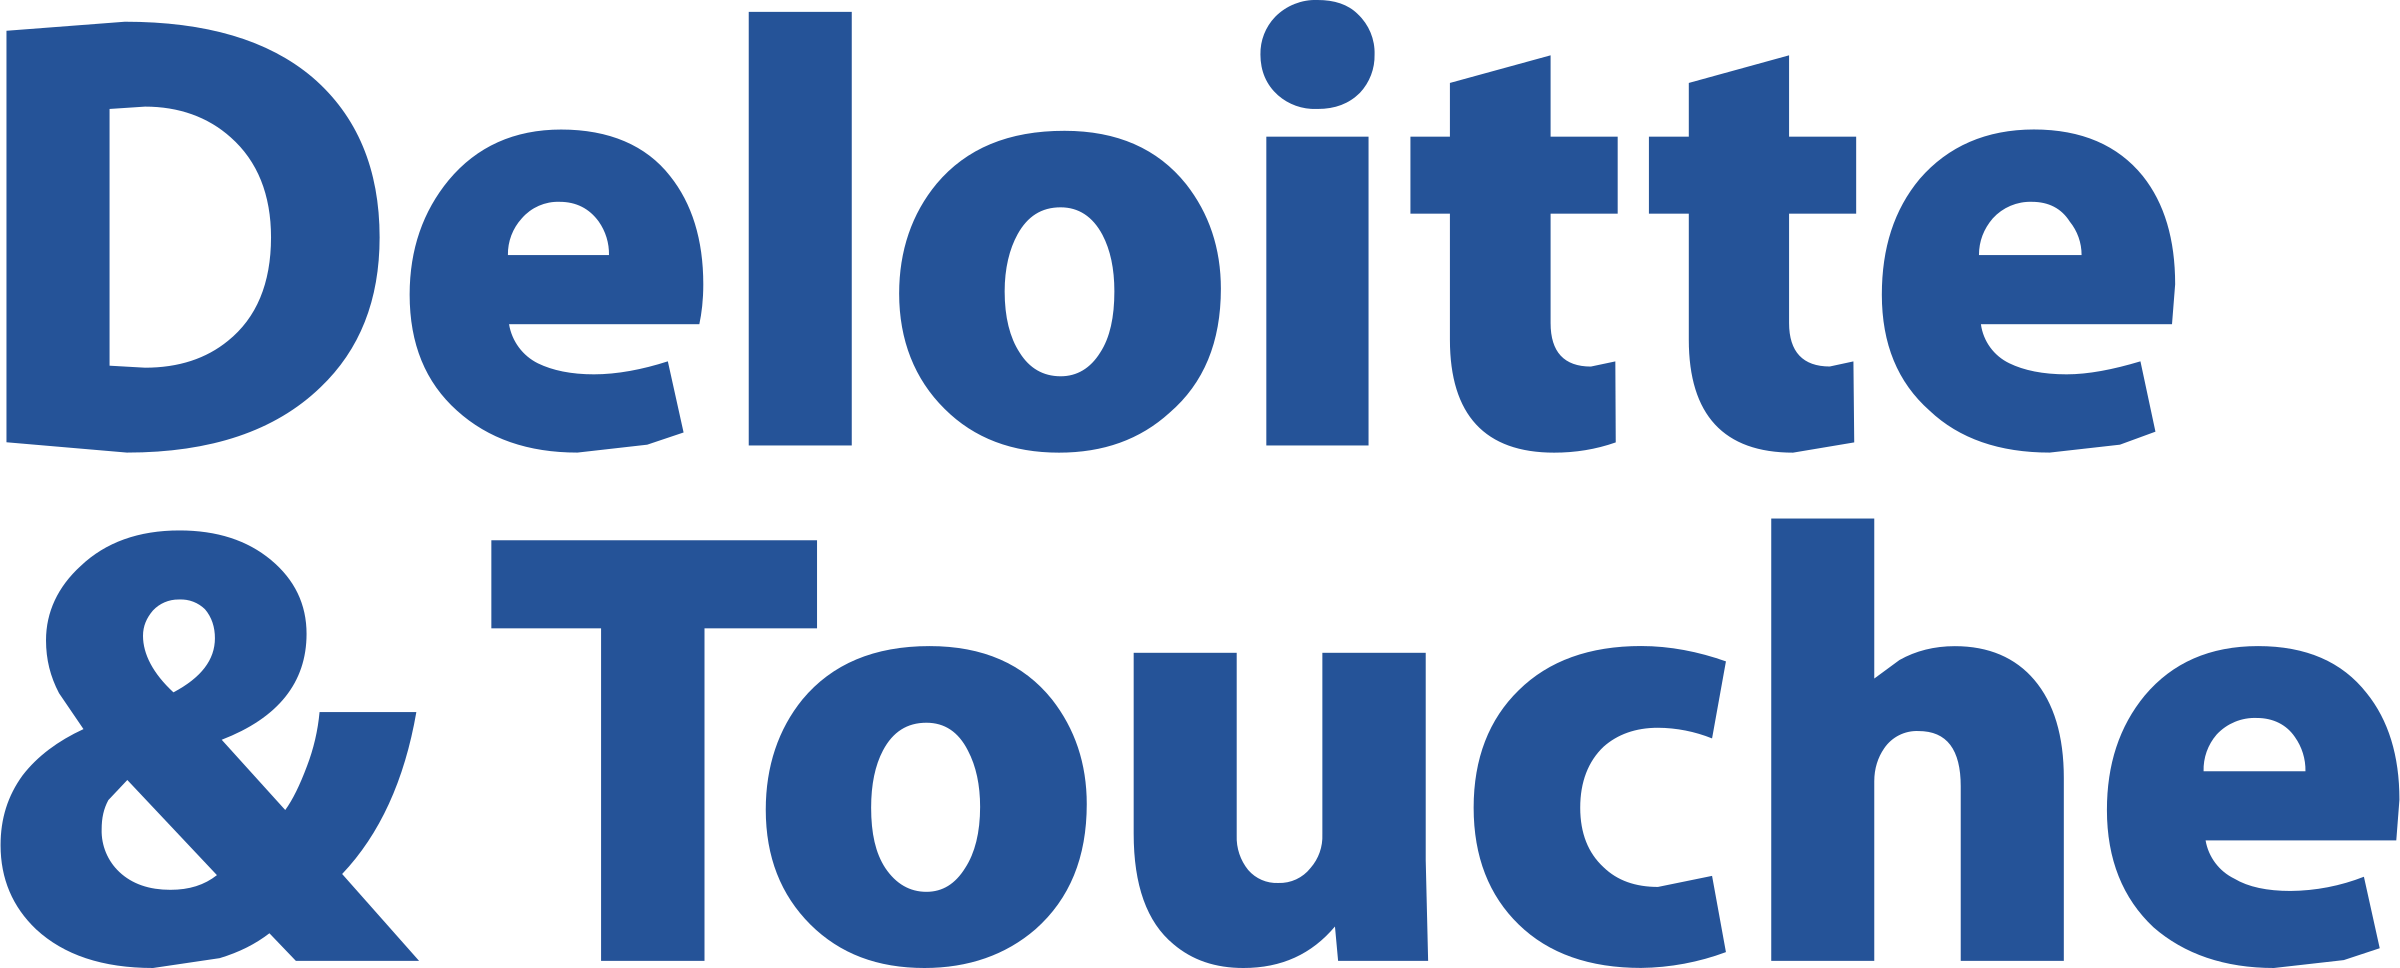 Deloitte & Touche 1 Logo Png Transparent - Deloitte And Touche Logo (24...